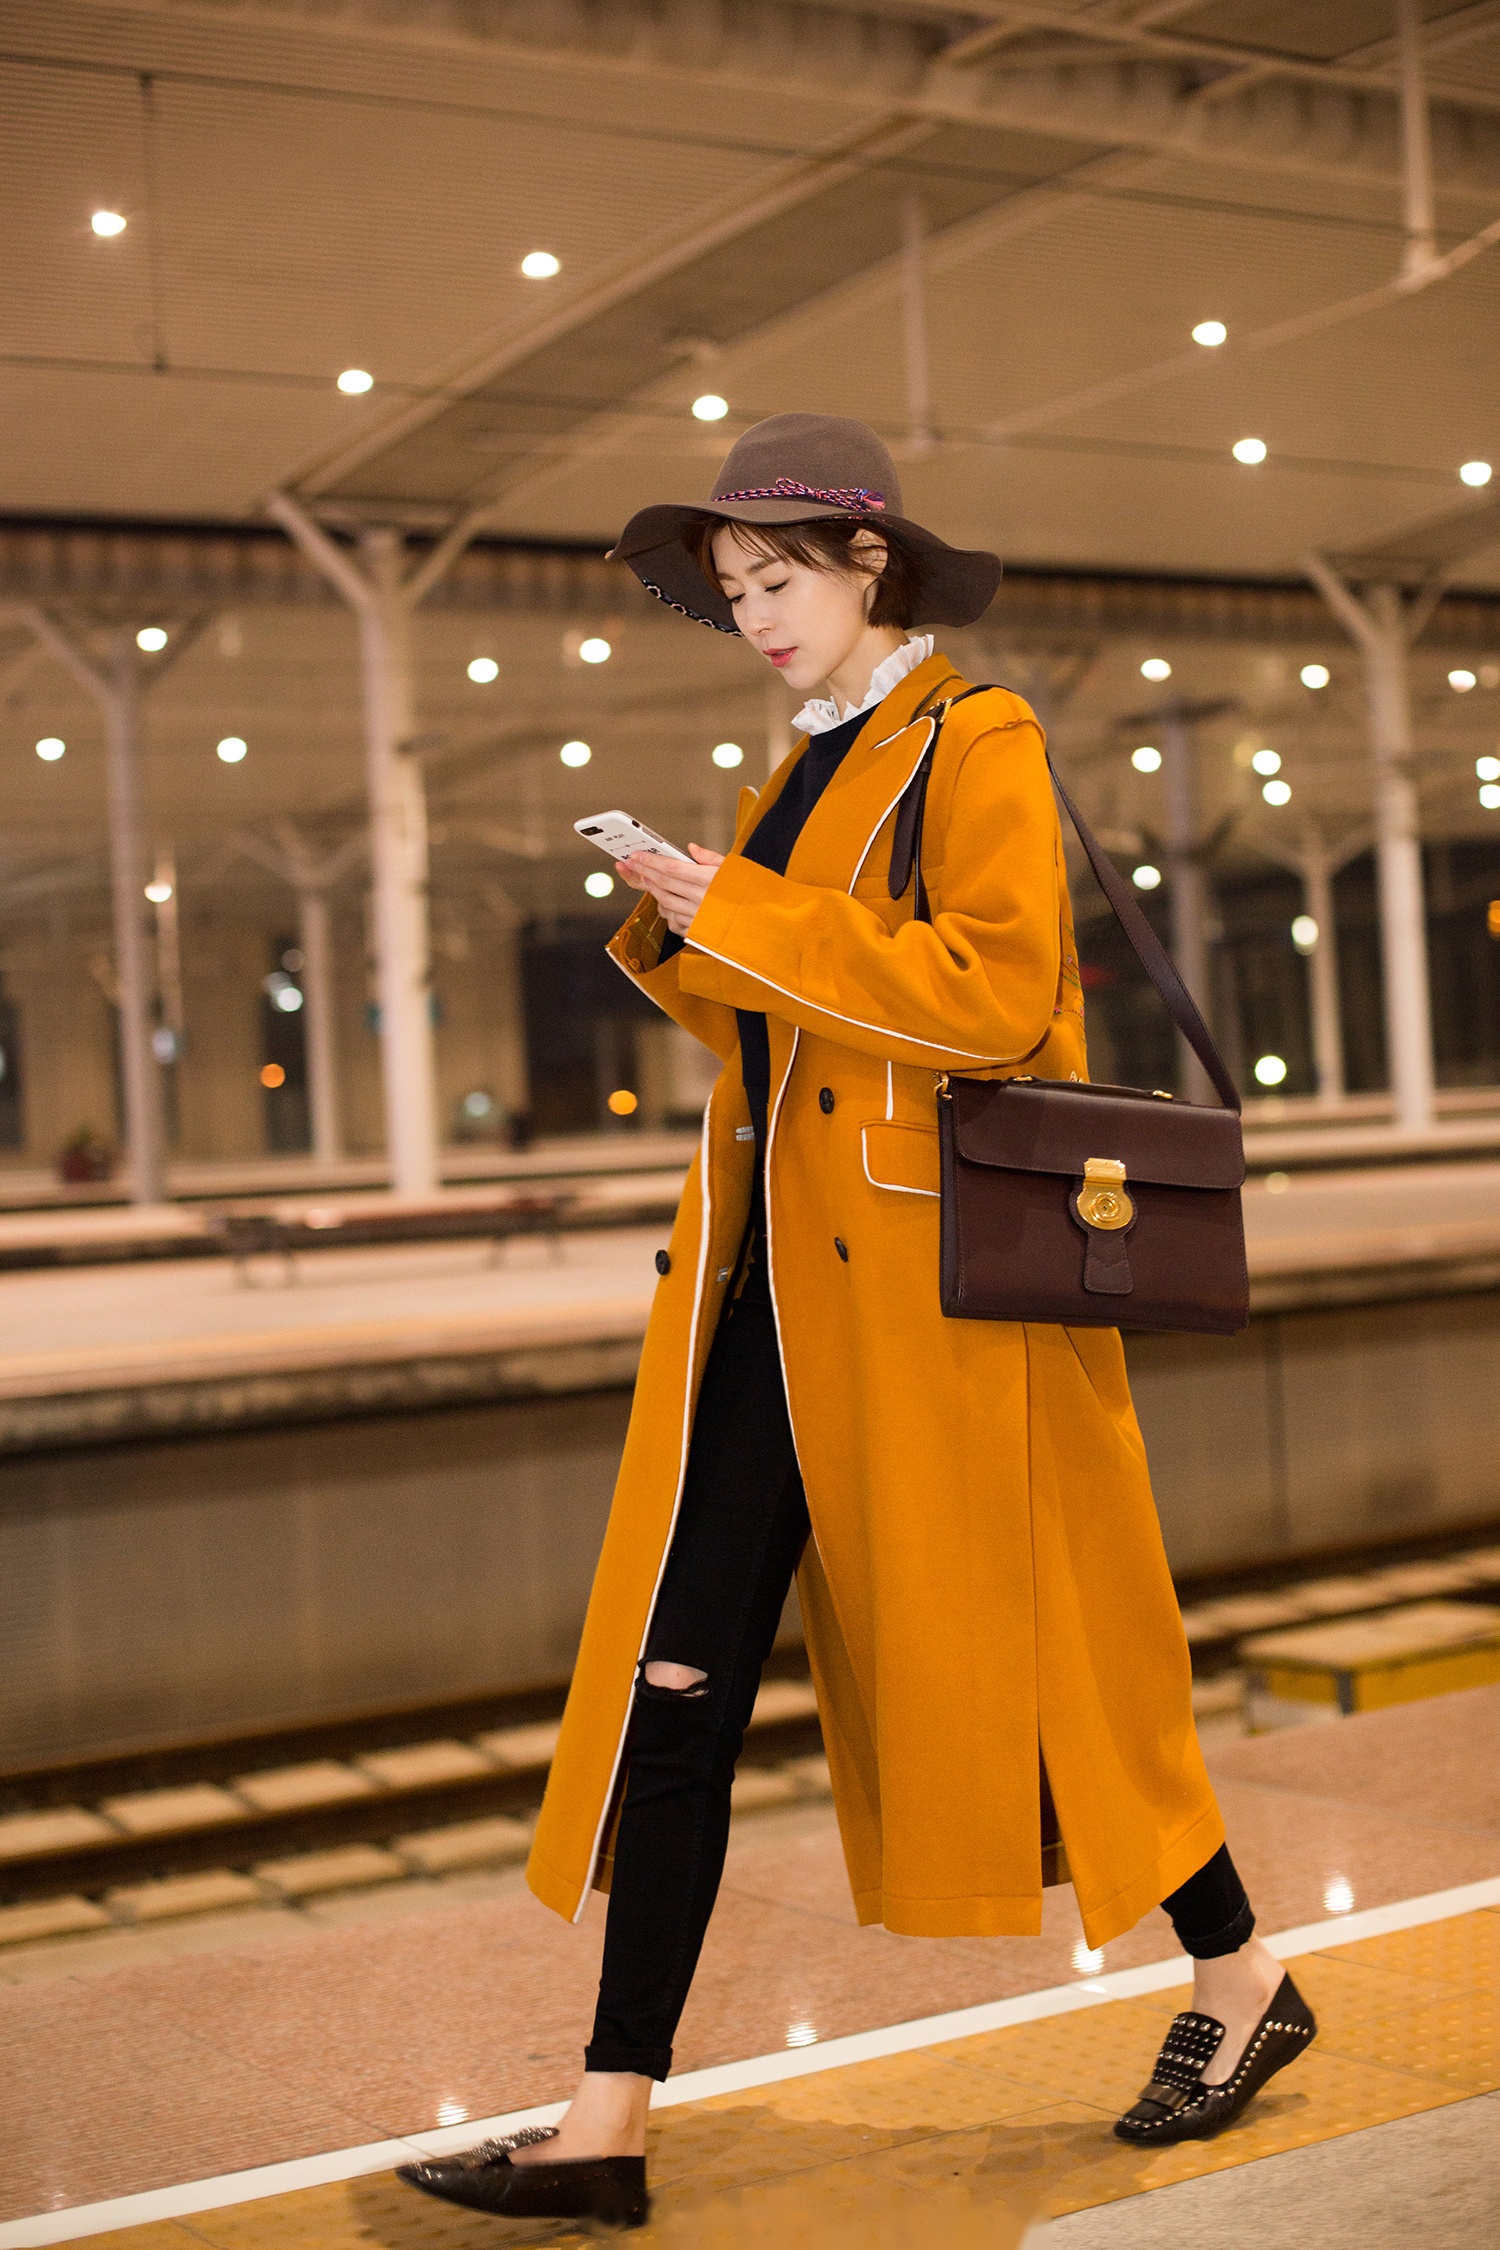 演员卢杉现身北京高铁站,身穿橘色长款毛呢大衣搭配复古公文包外加咖